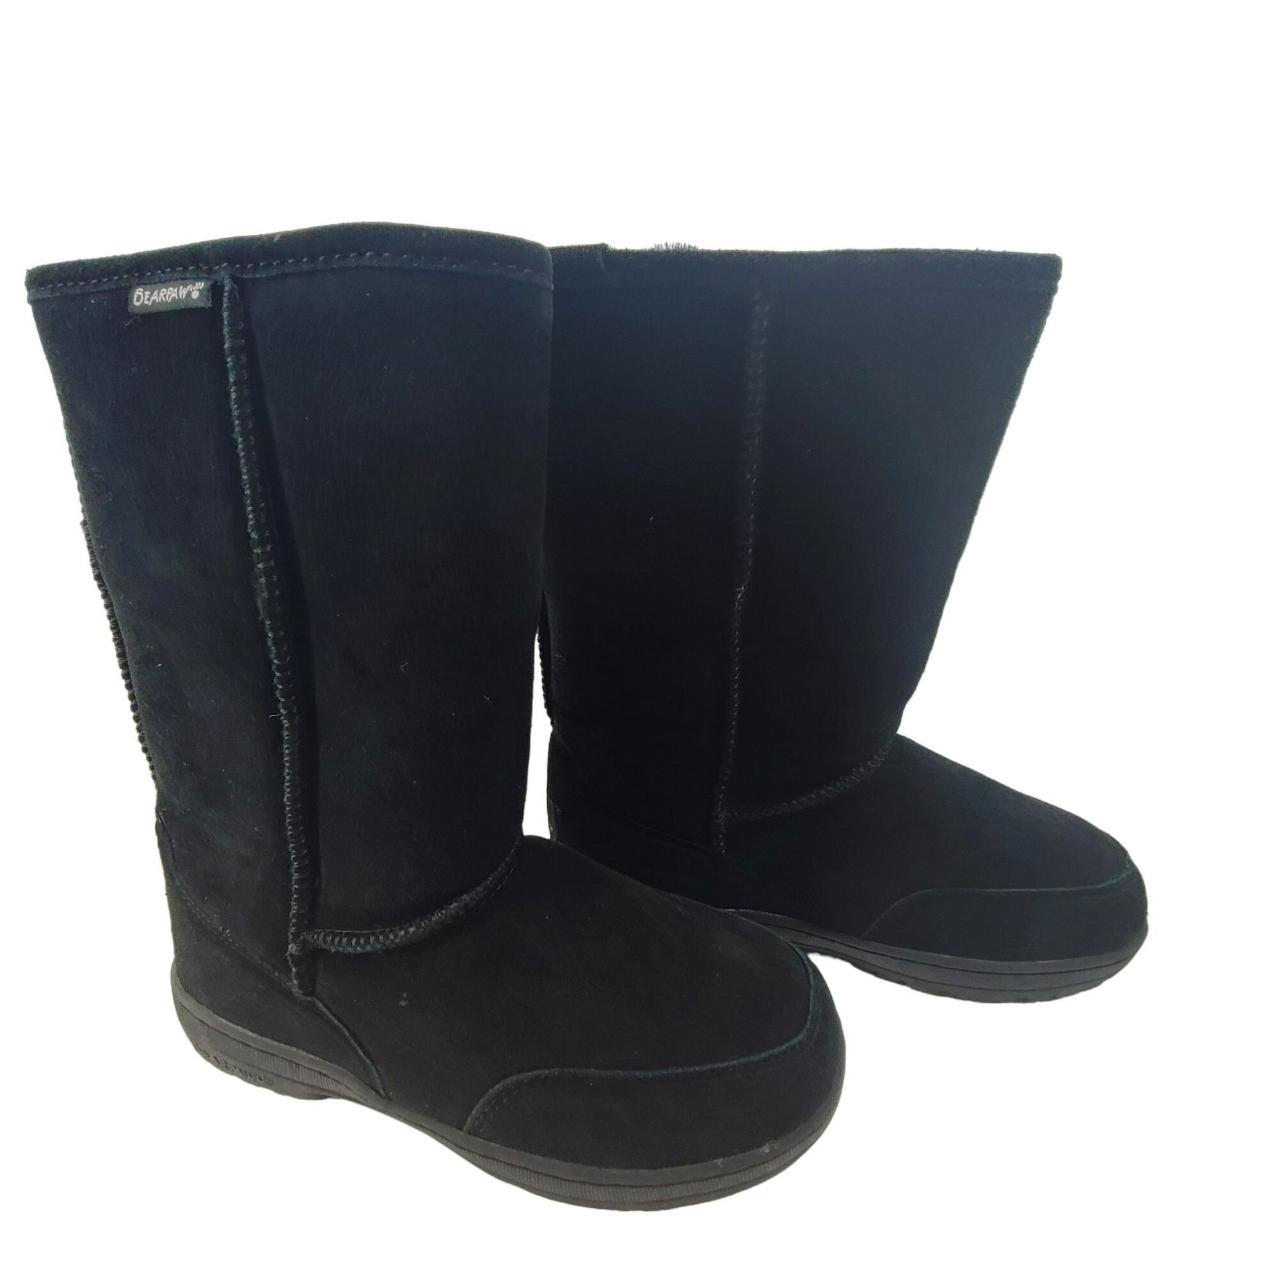 BearPaw Meadow 10” Sheepskin Boots Black Size... - Depop